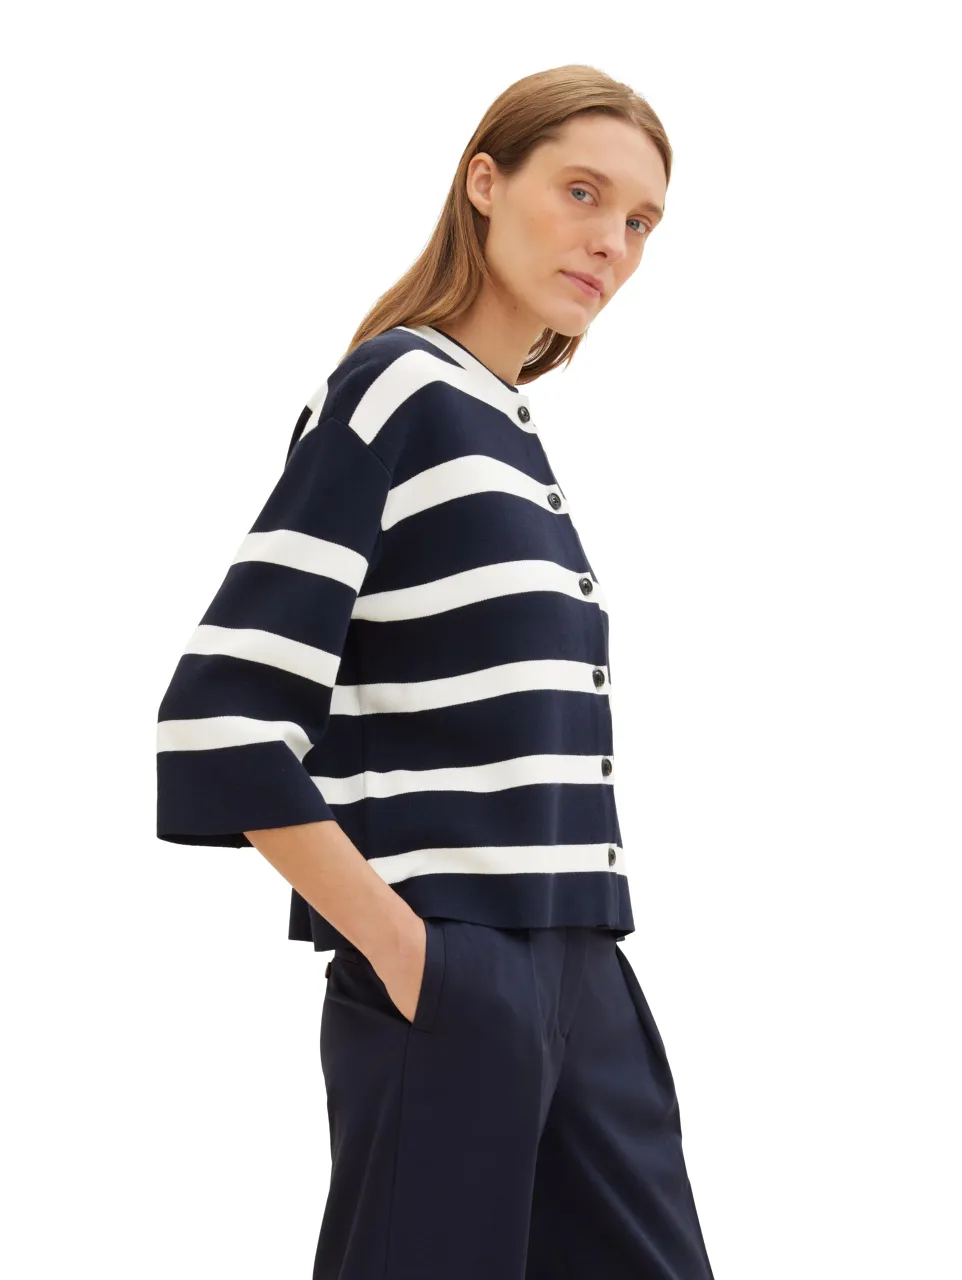 Rollkragenpullover knit cardigan striped